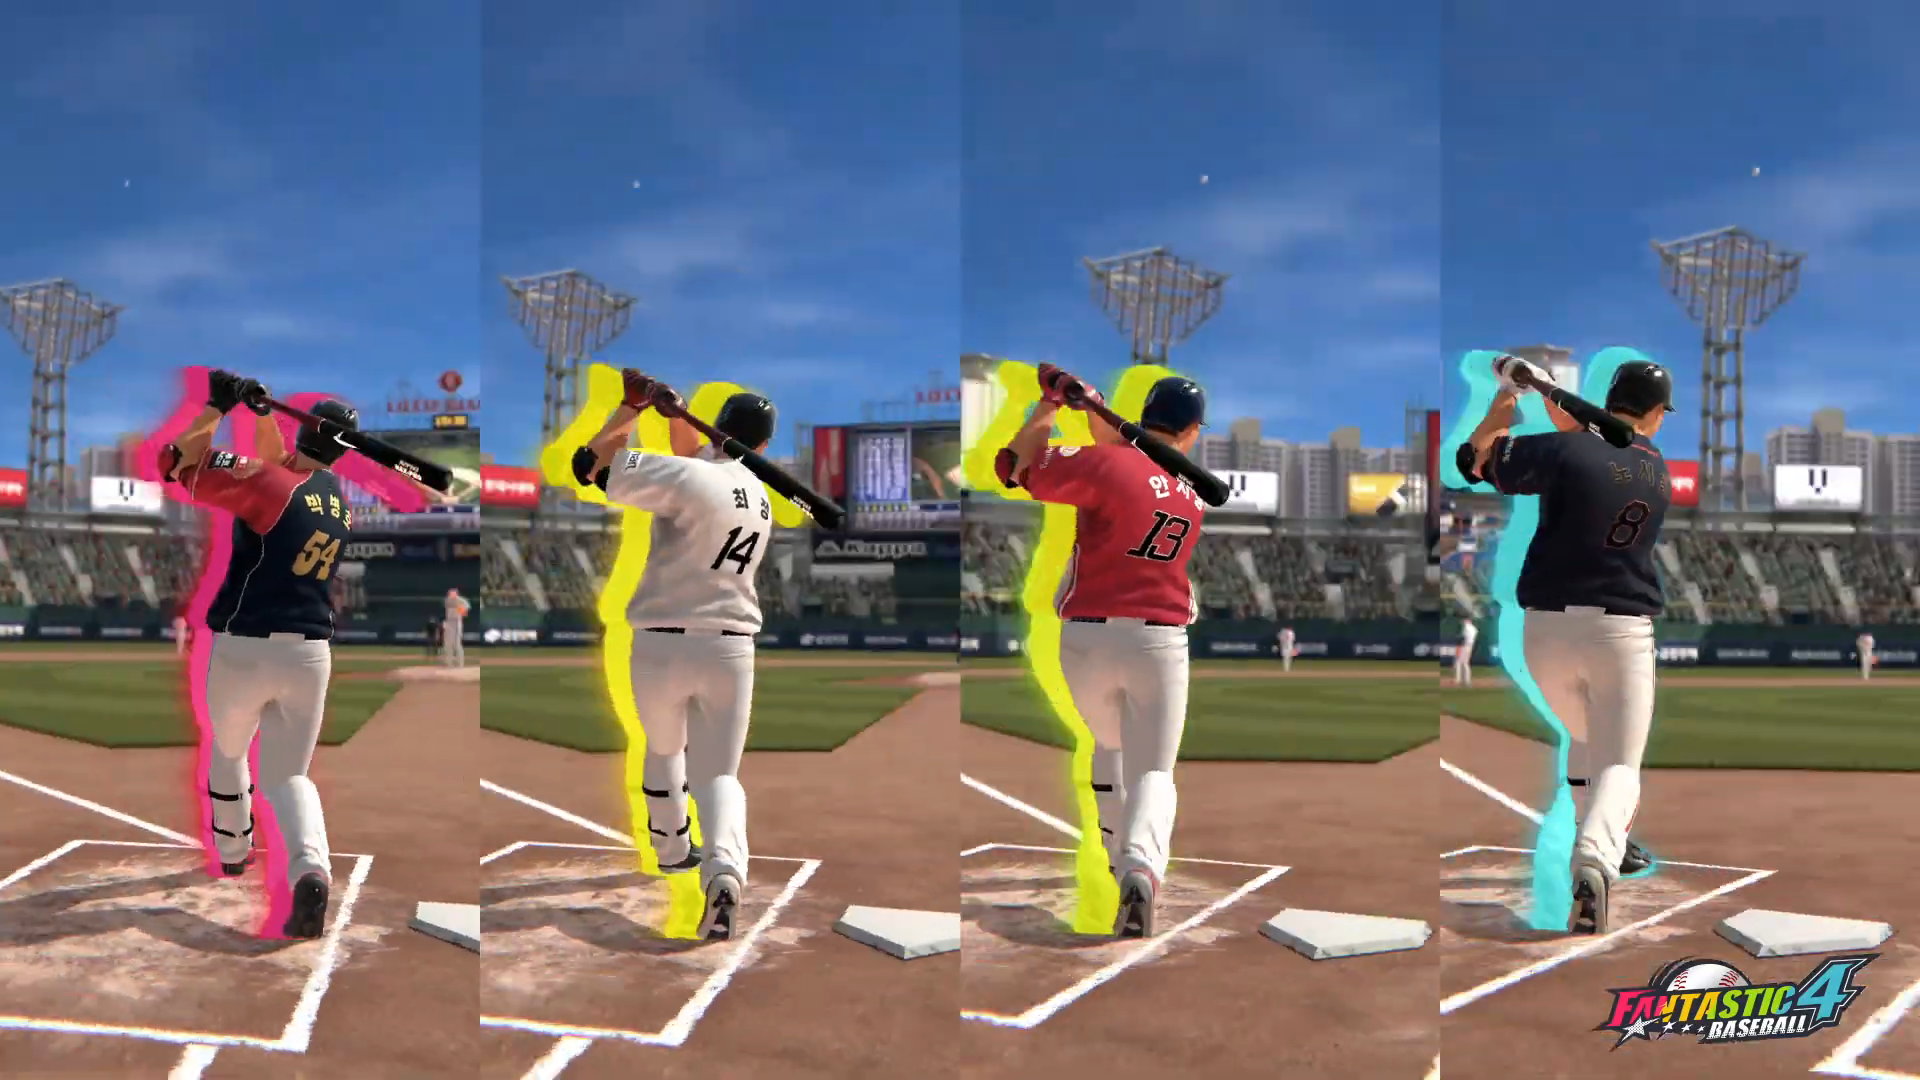 Fantastic 4 Baseball screenshot game